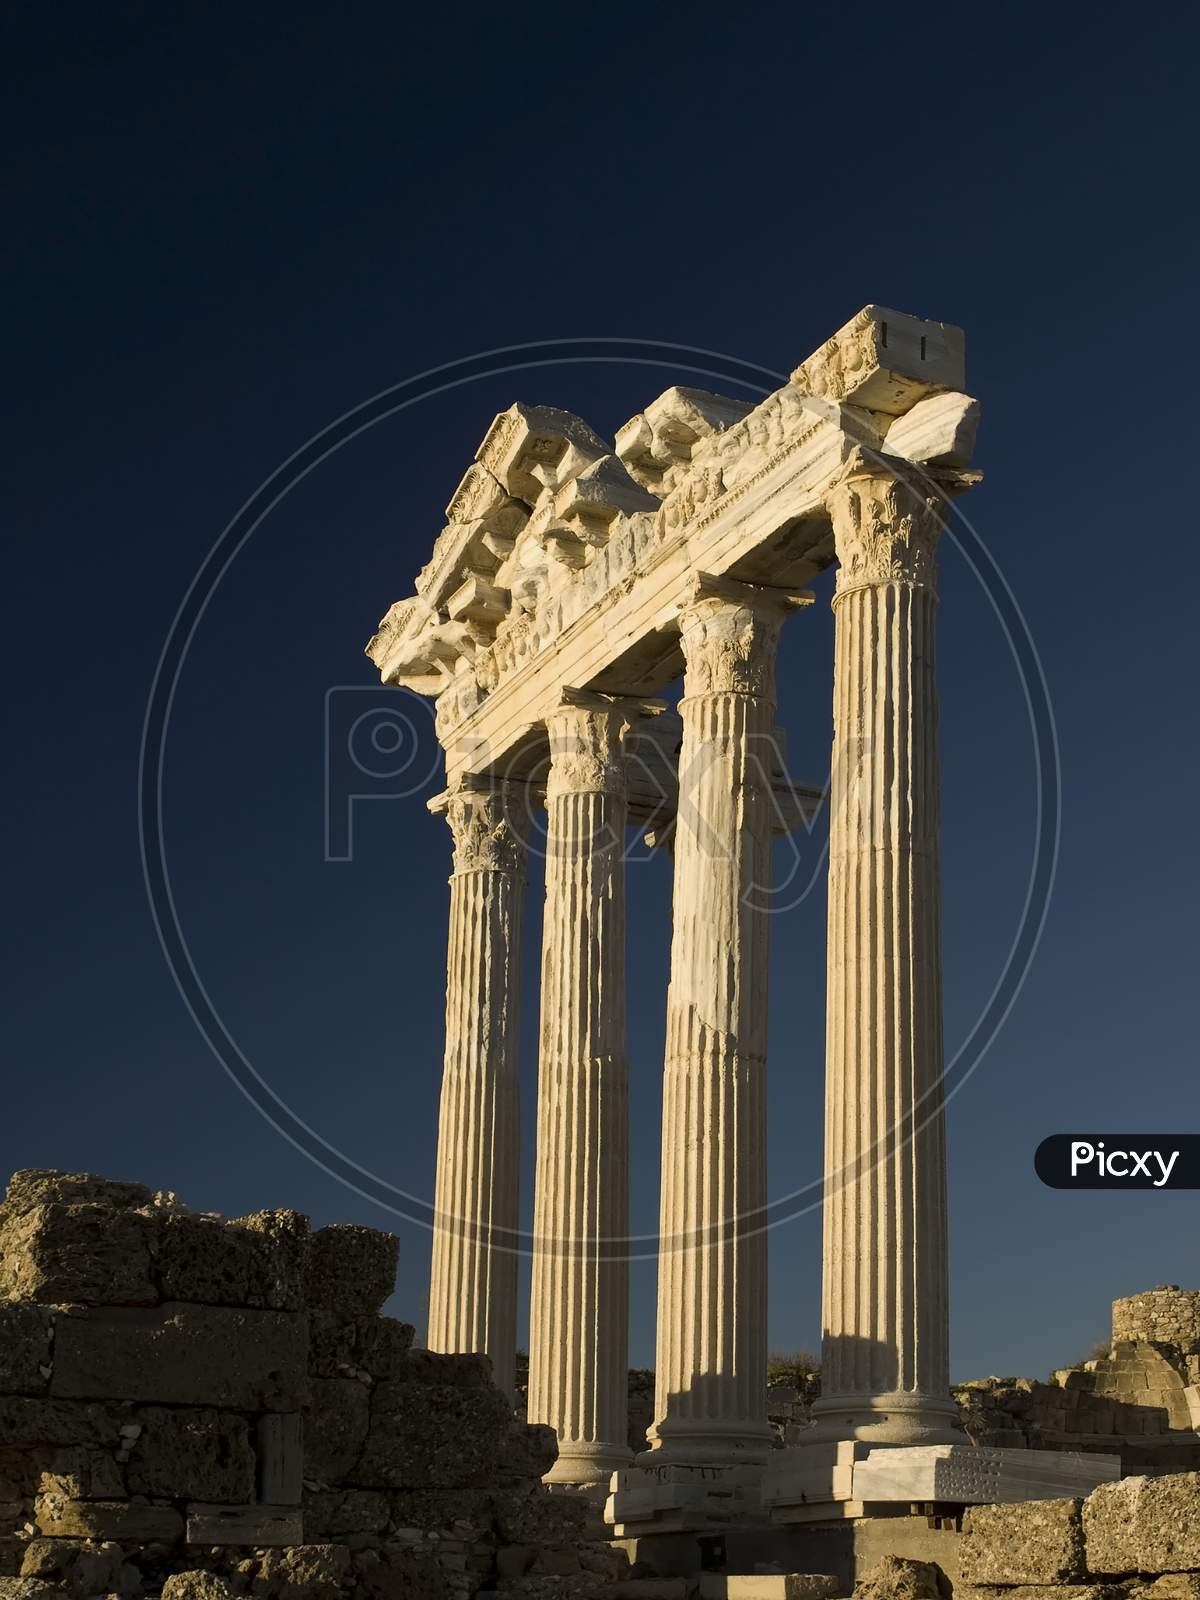 Temple of Apollo located in Side Turkey